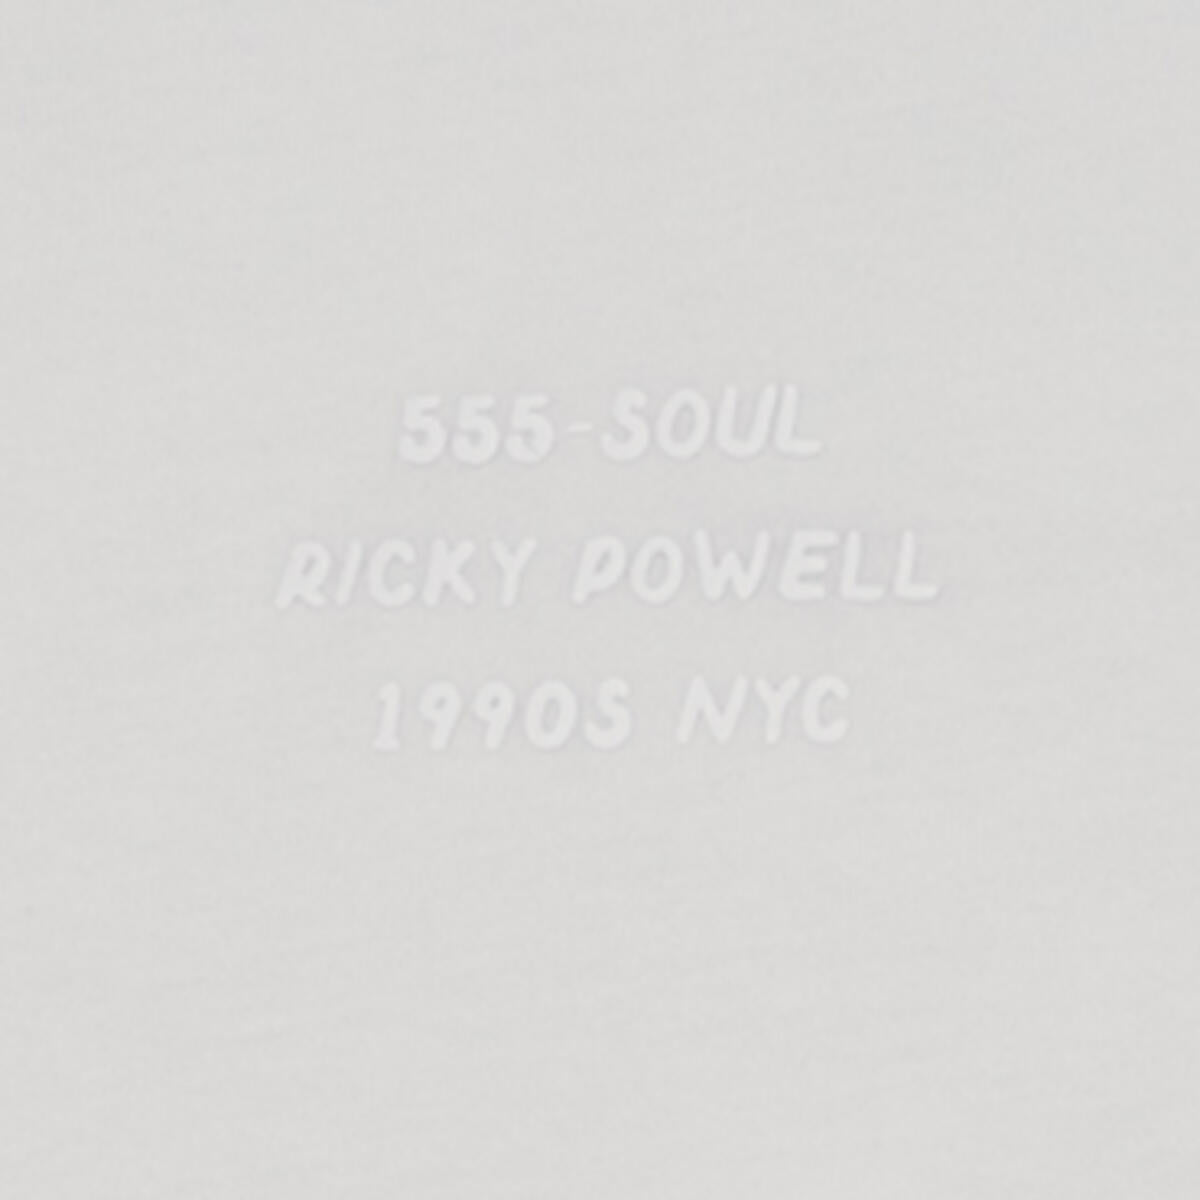 555-Soul Ricky Powell + 555-SOUL - White